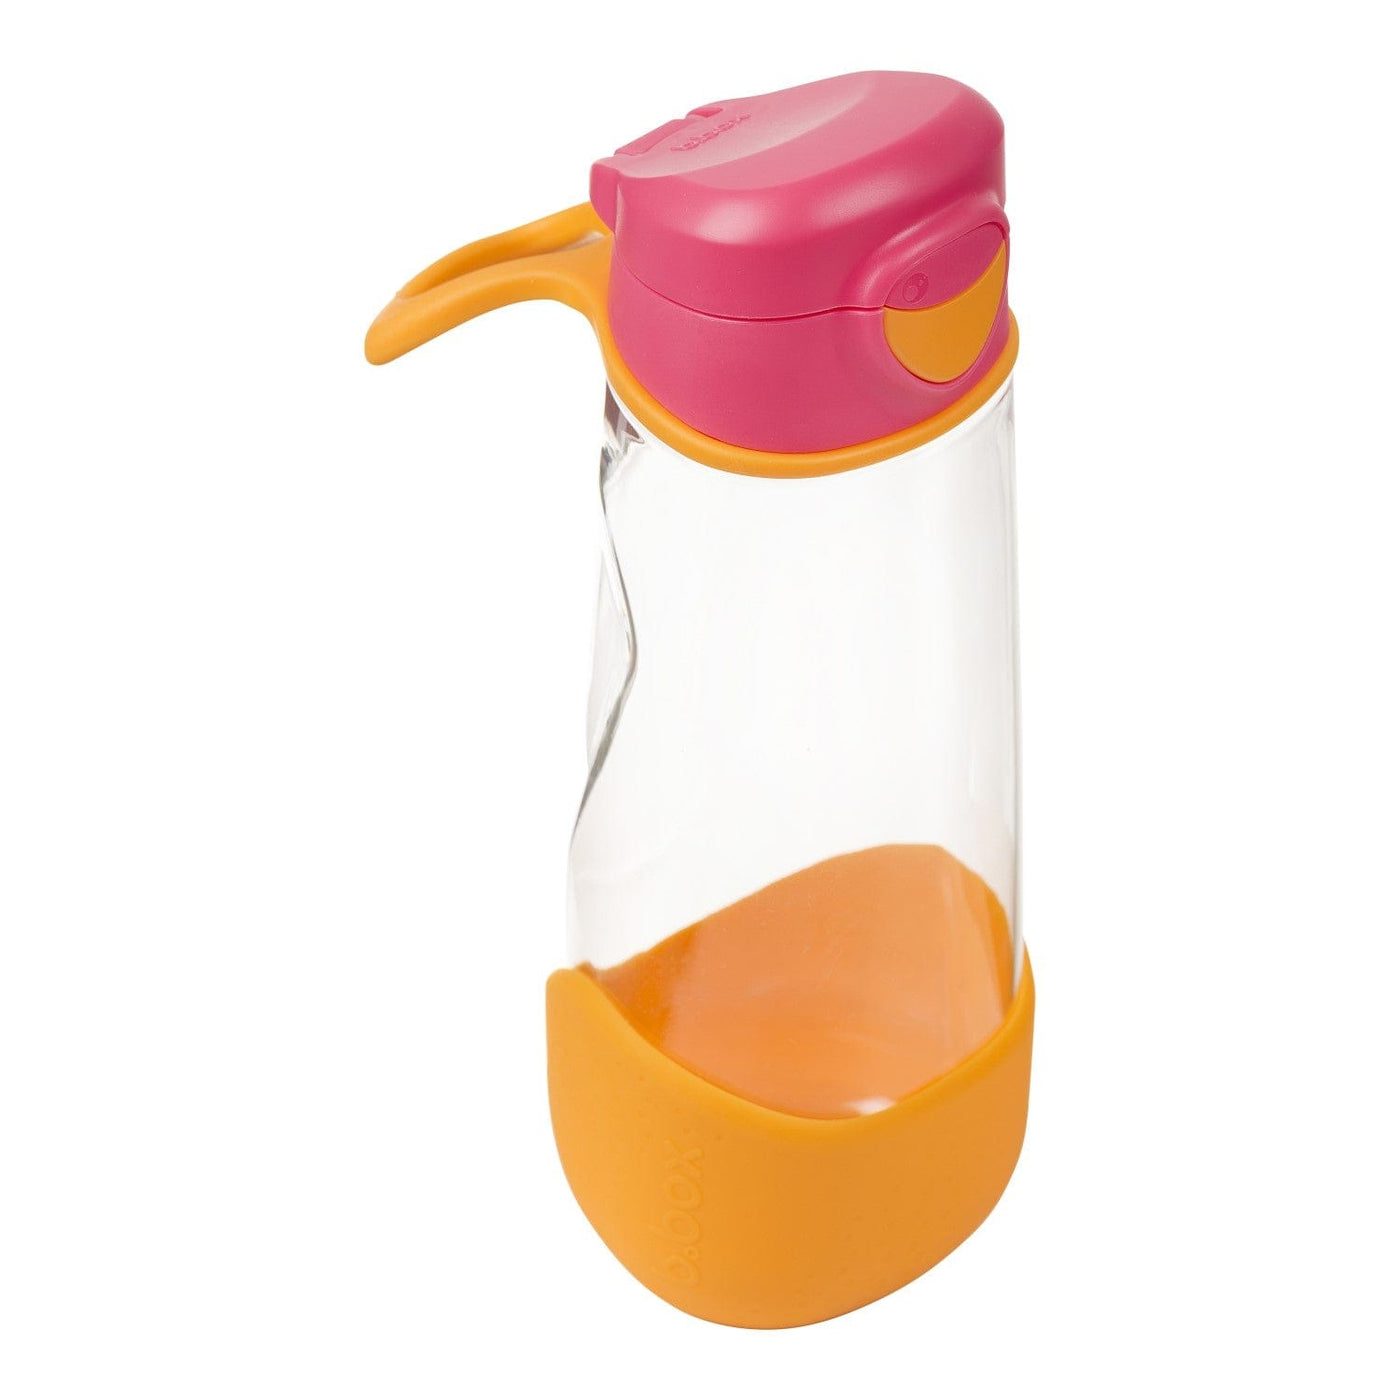 Tritan Sport Spout Drink Bottle: 600ml- Strawberry Shake Pink Orange | b.box by B.Box Baby Care